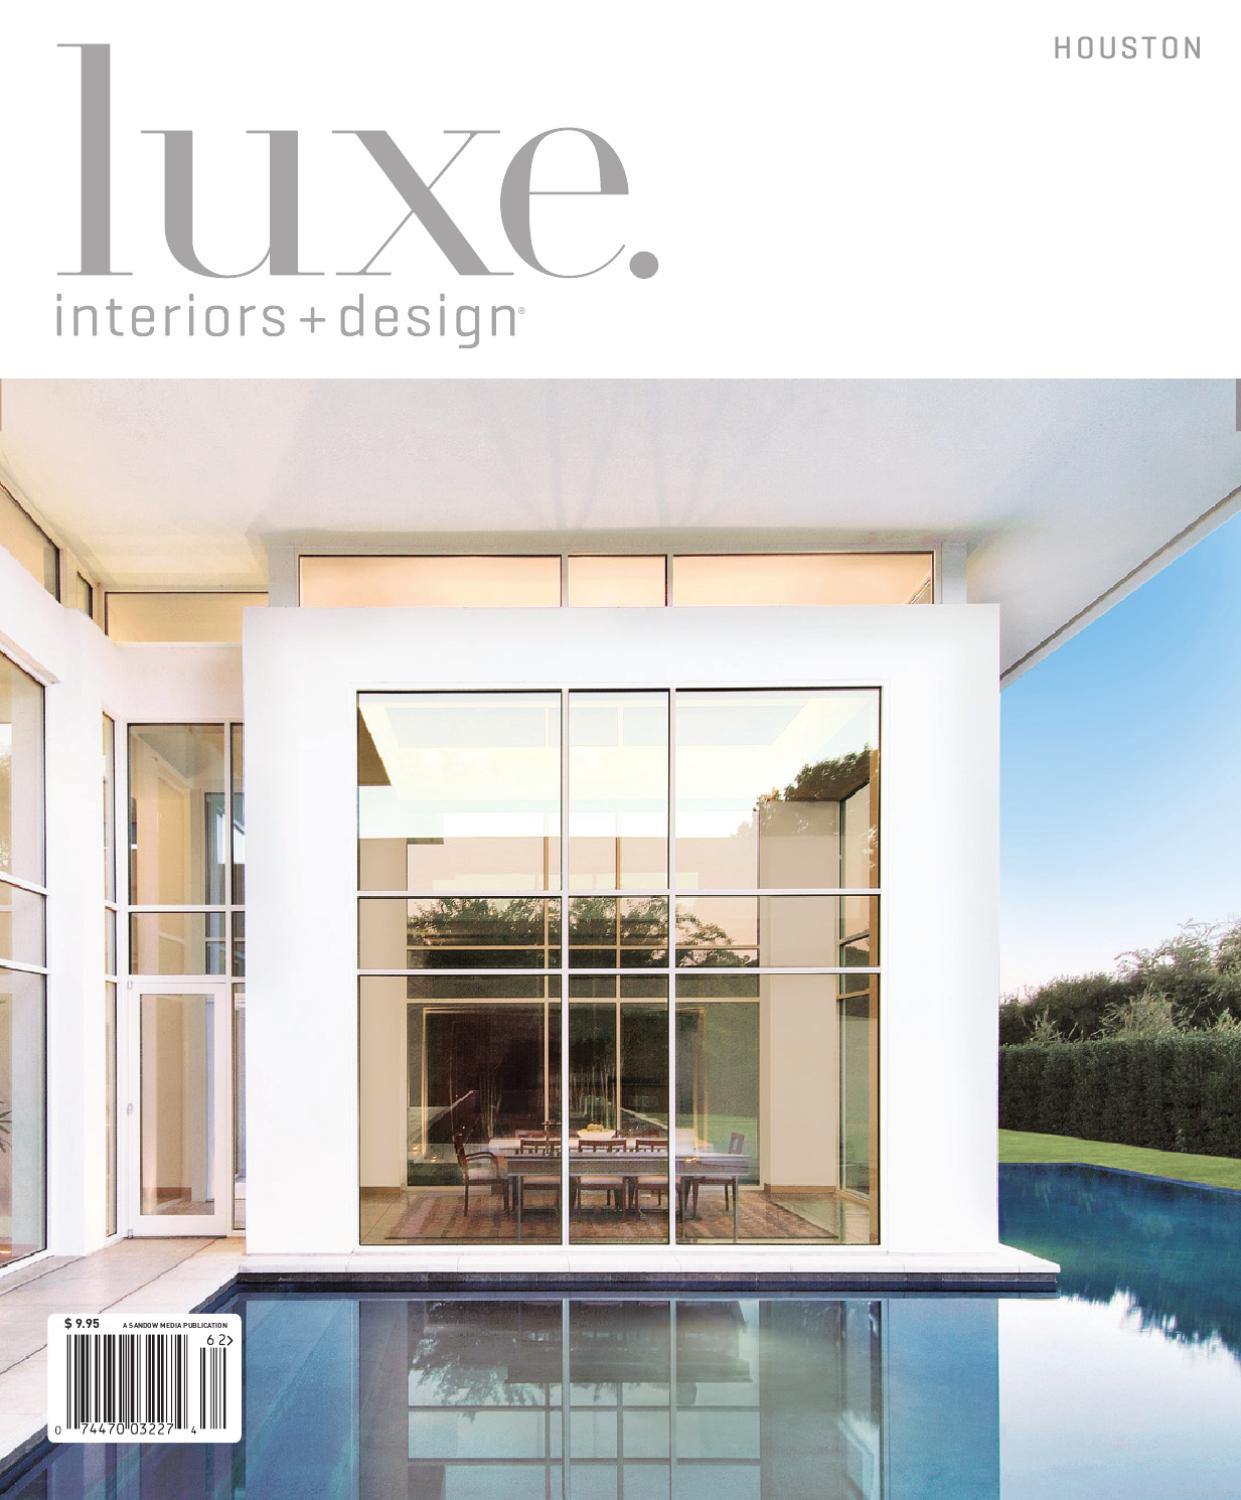 Gartendesigner Inspirierend Luxe Interior Design Houston by Sandow Media issuu